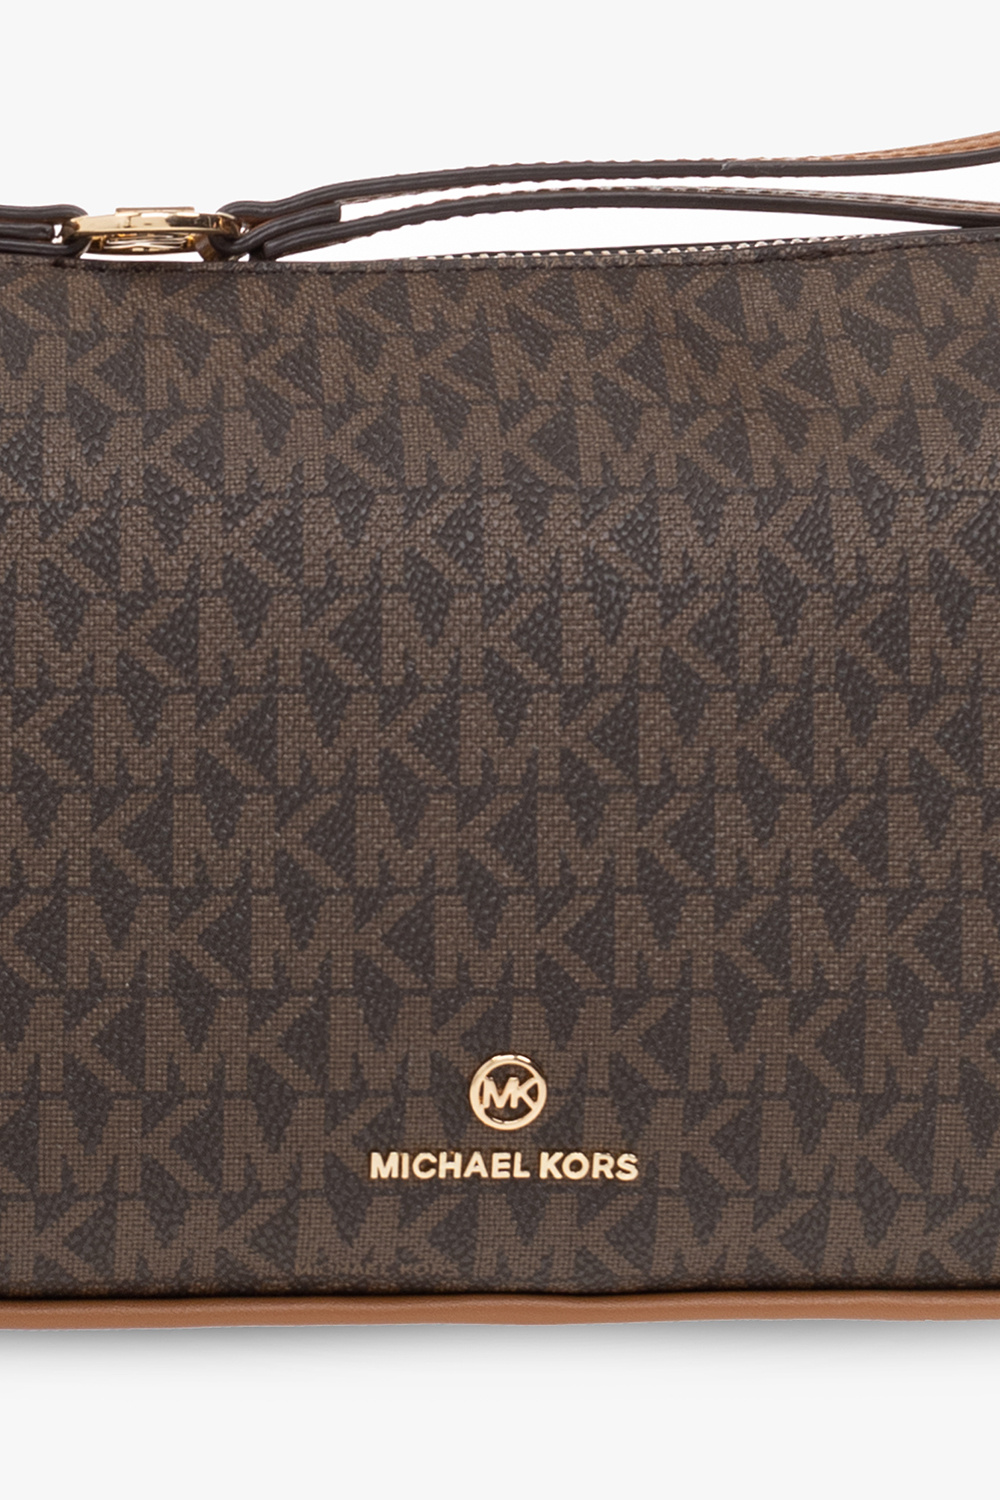 Michael Michael Kors ‘Jet Set Charm’ shoulder AW0AW09853 bag